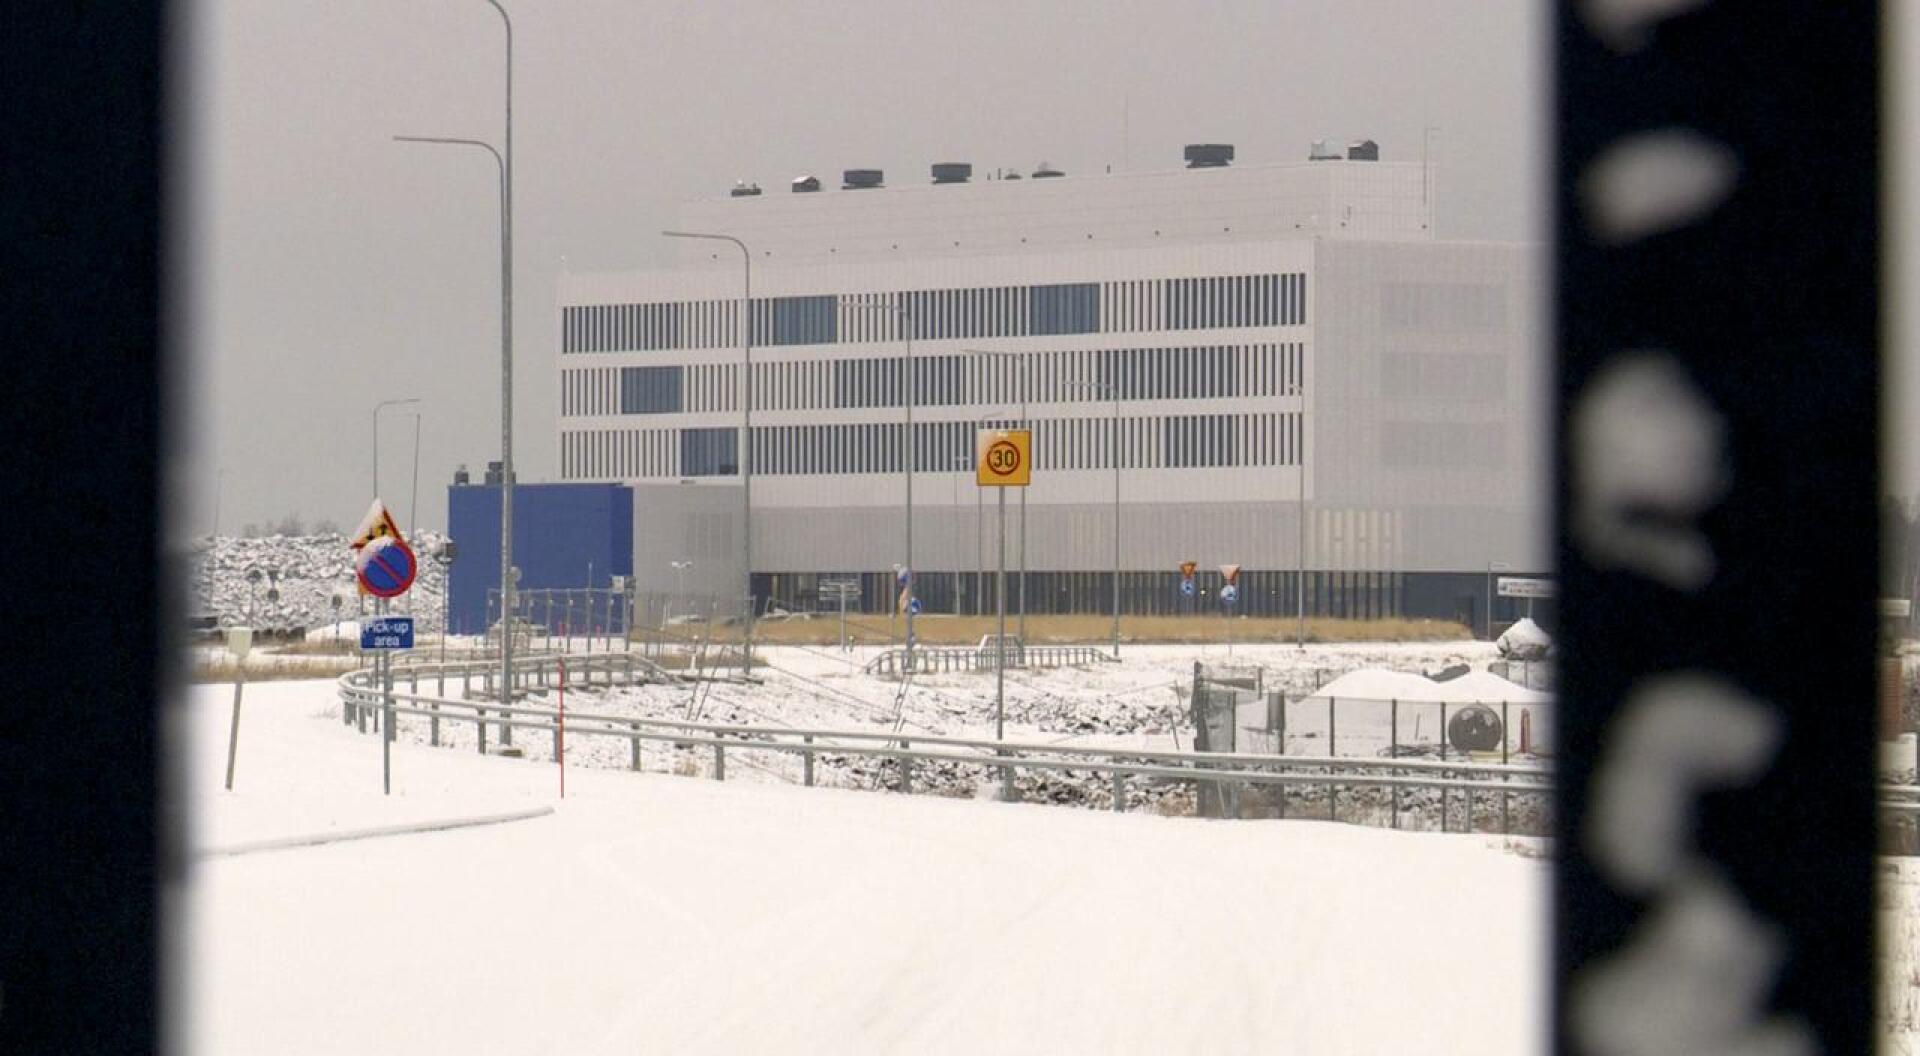 Hanhikiven ydinvoimalan työt keskeytyivät, nyt Venäjä kirjelmöi asiasta Suomen hallitukselle.